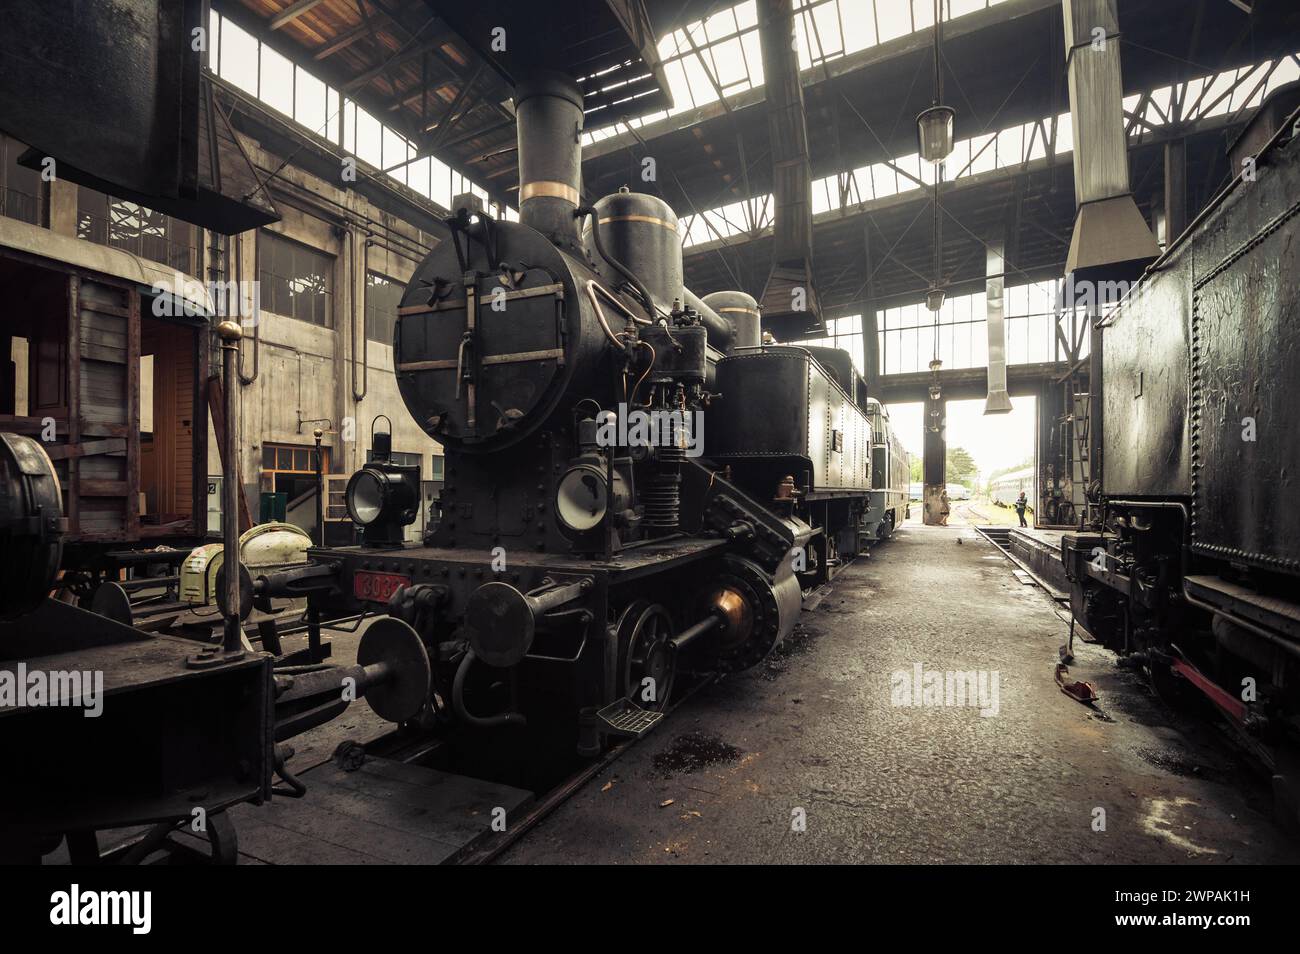 Vecchia locomotiva a vapore KkStB 30 e altri treni in deposito. L'aria all'interno del capannone del treno è piena di fumo nebbioso. Immagine con tonalità marrone calde. Foto Stock